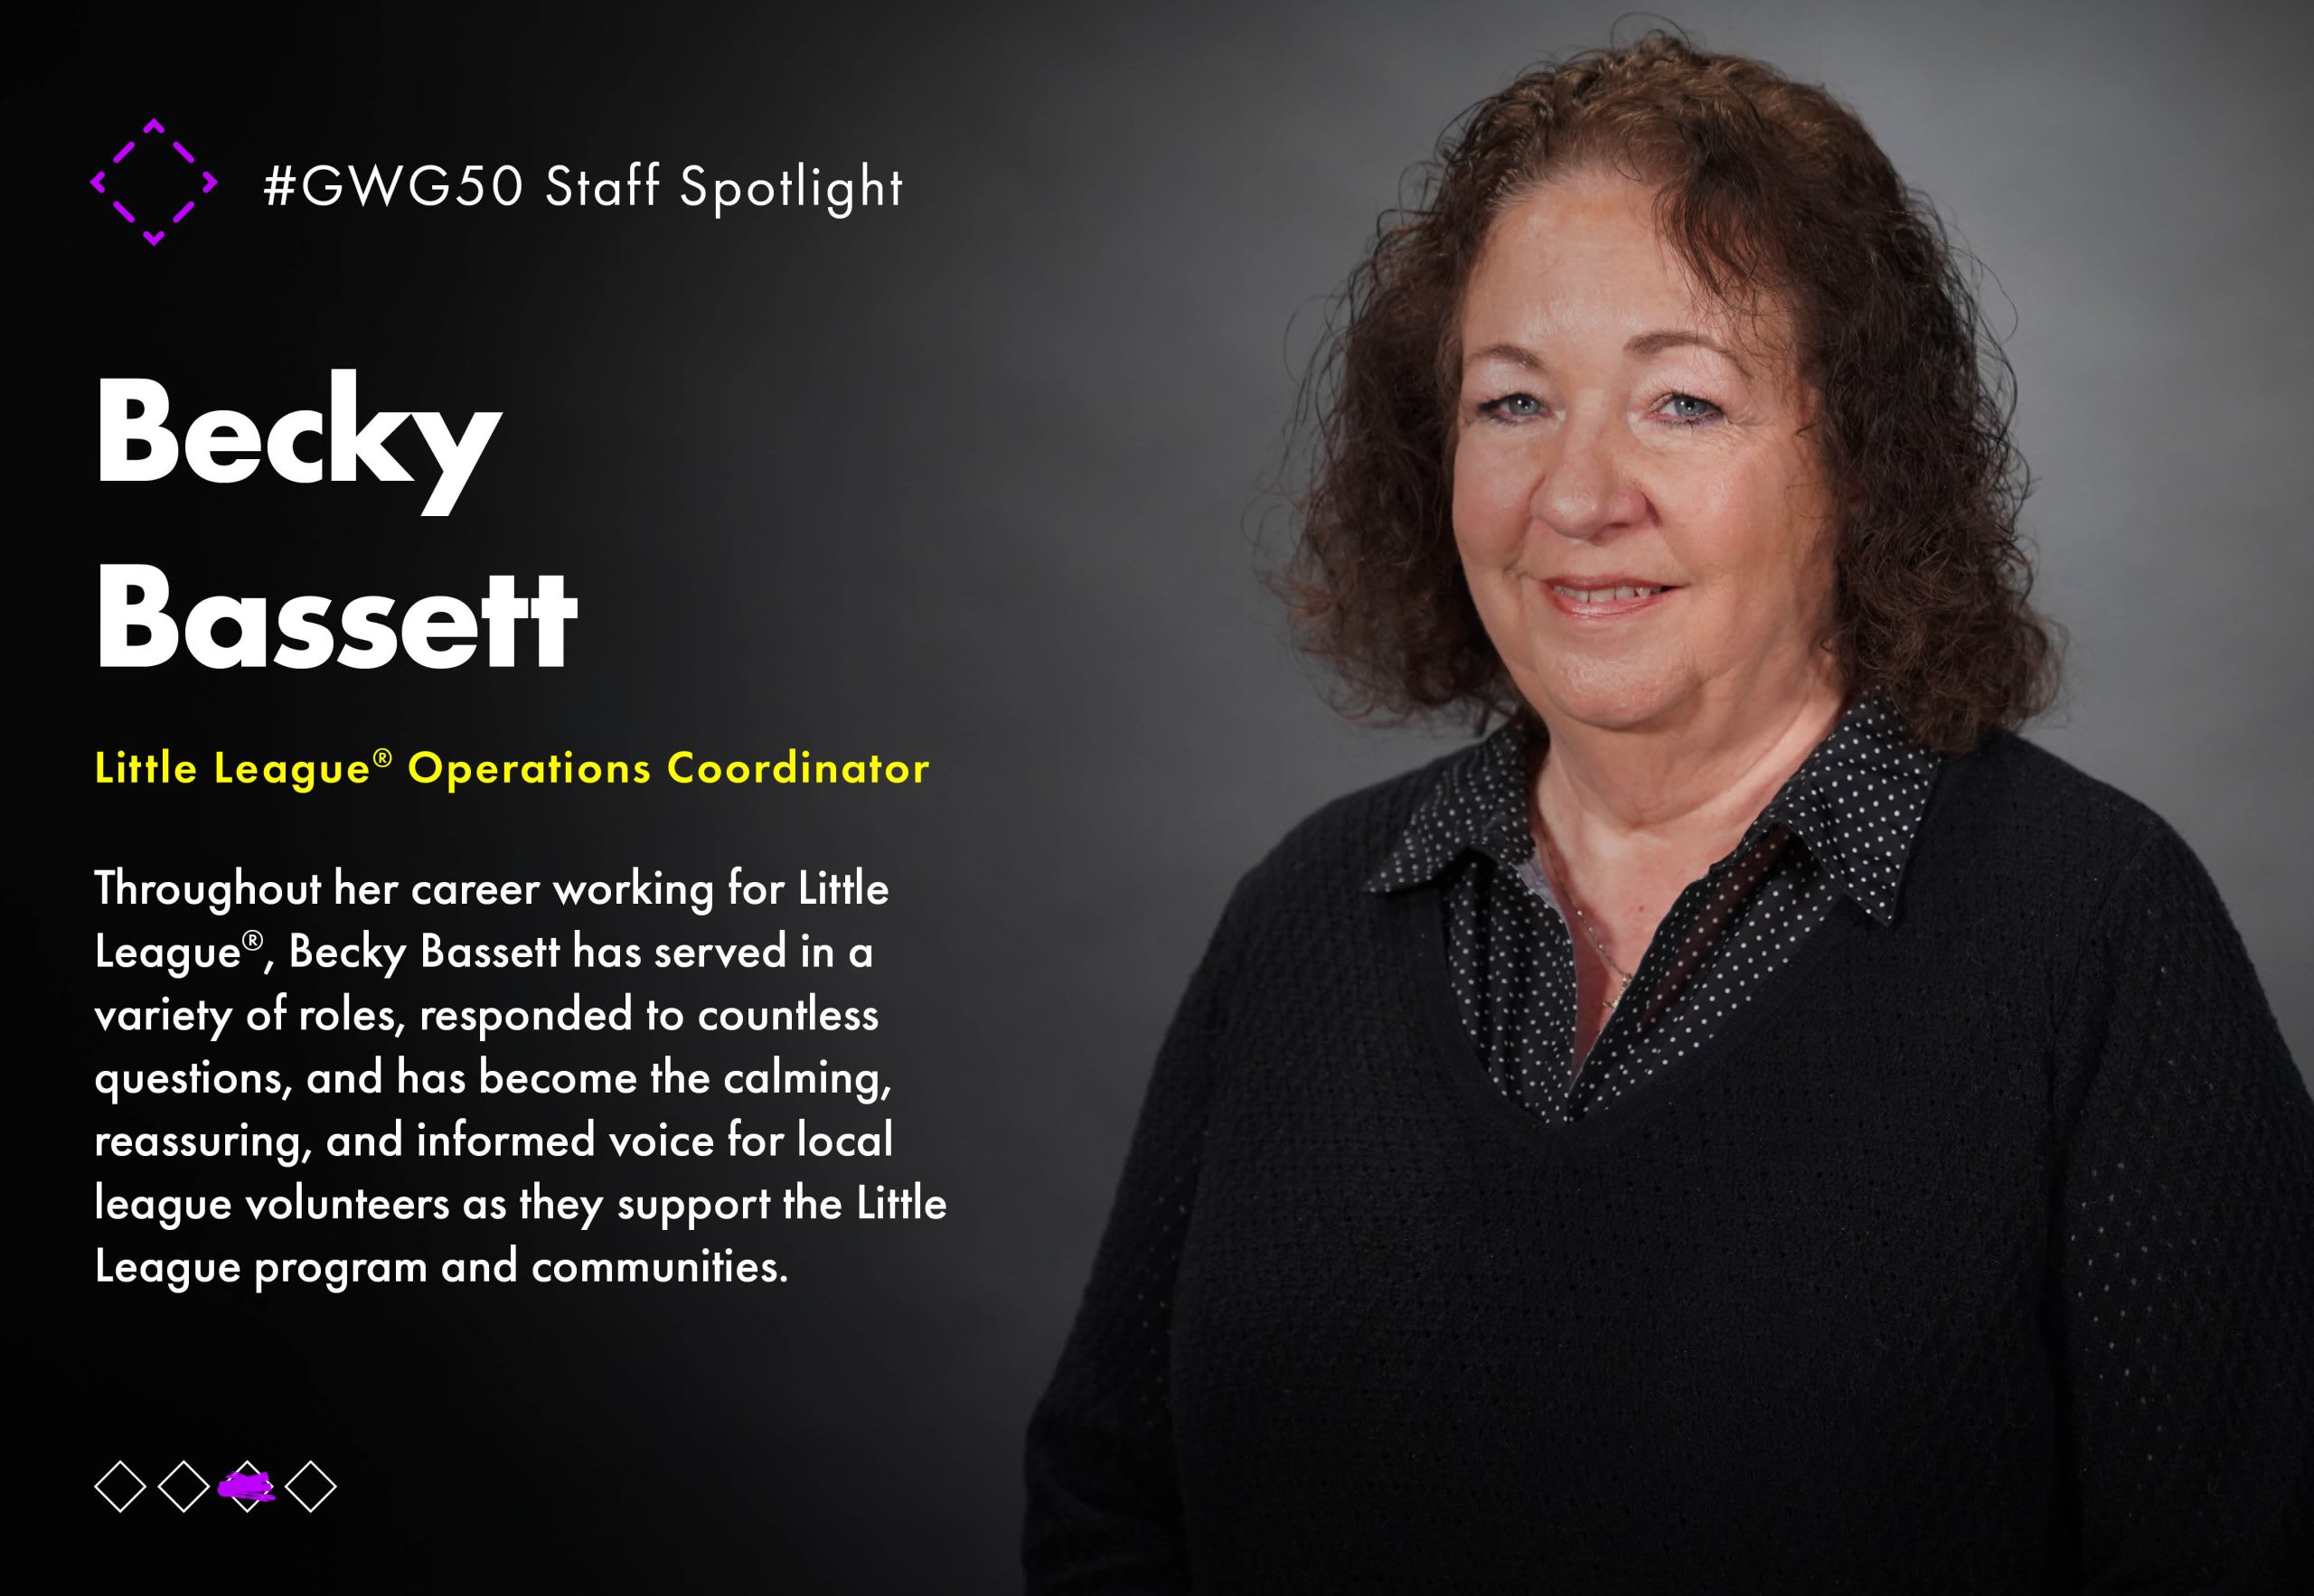 GWG50 Staff Spotlight Graphic - Becky Bassett